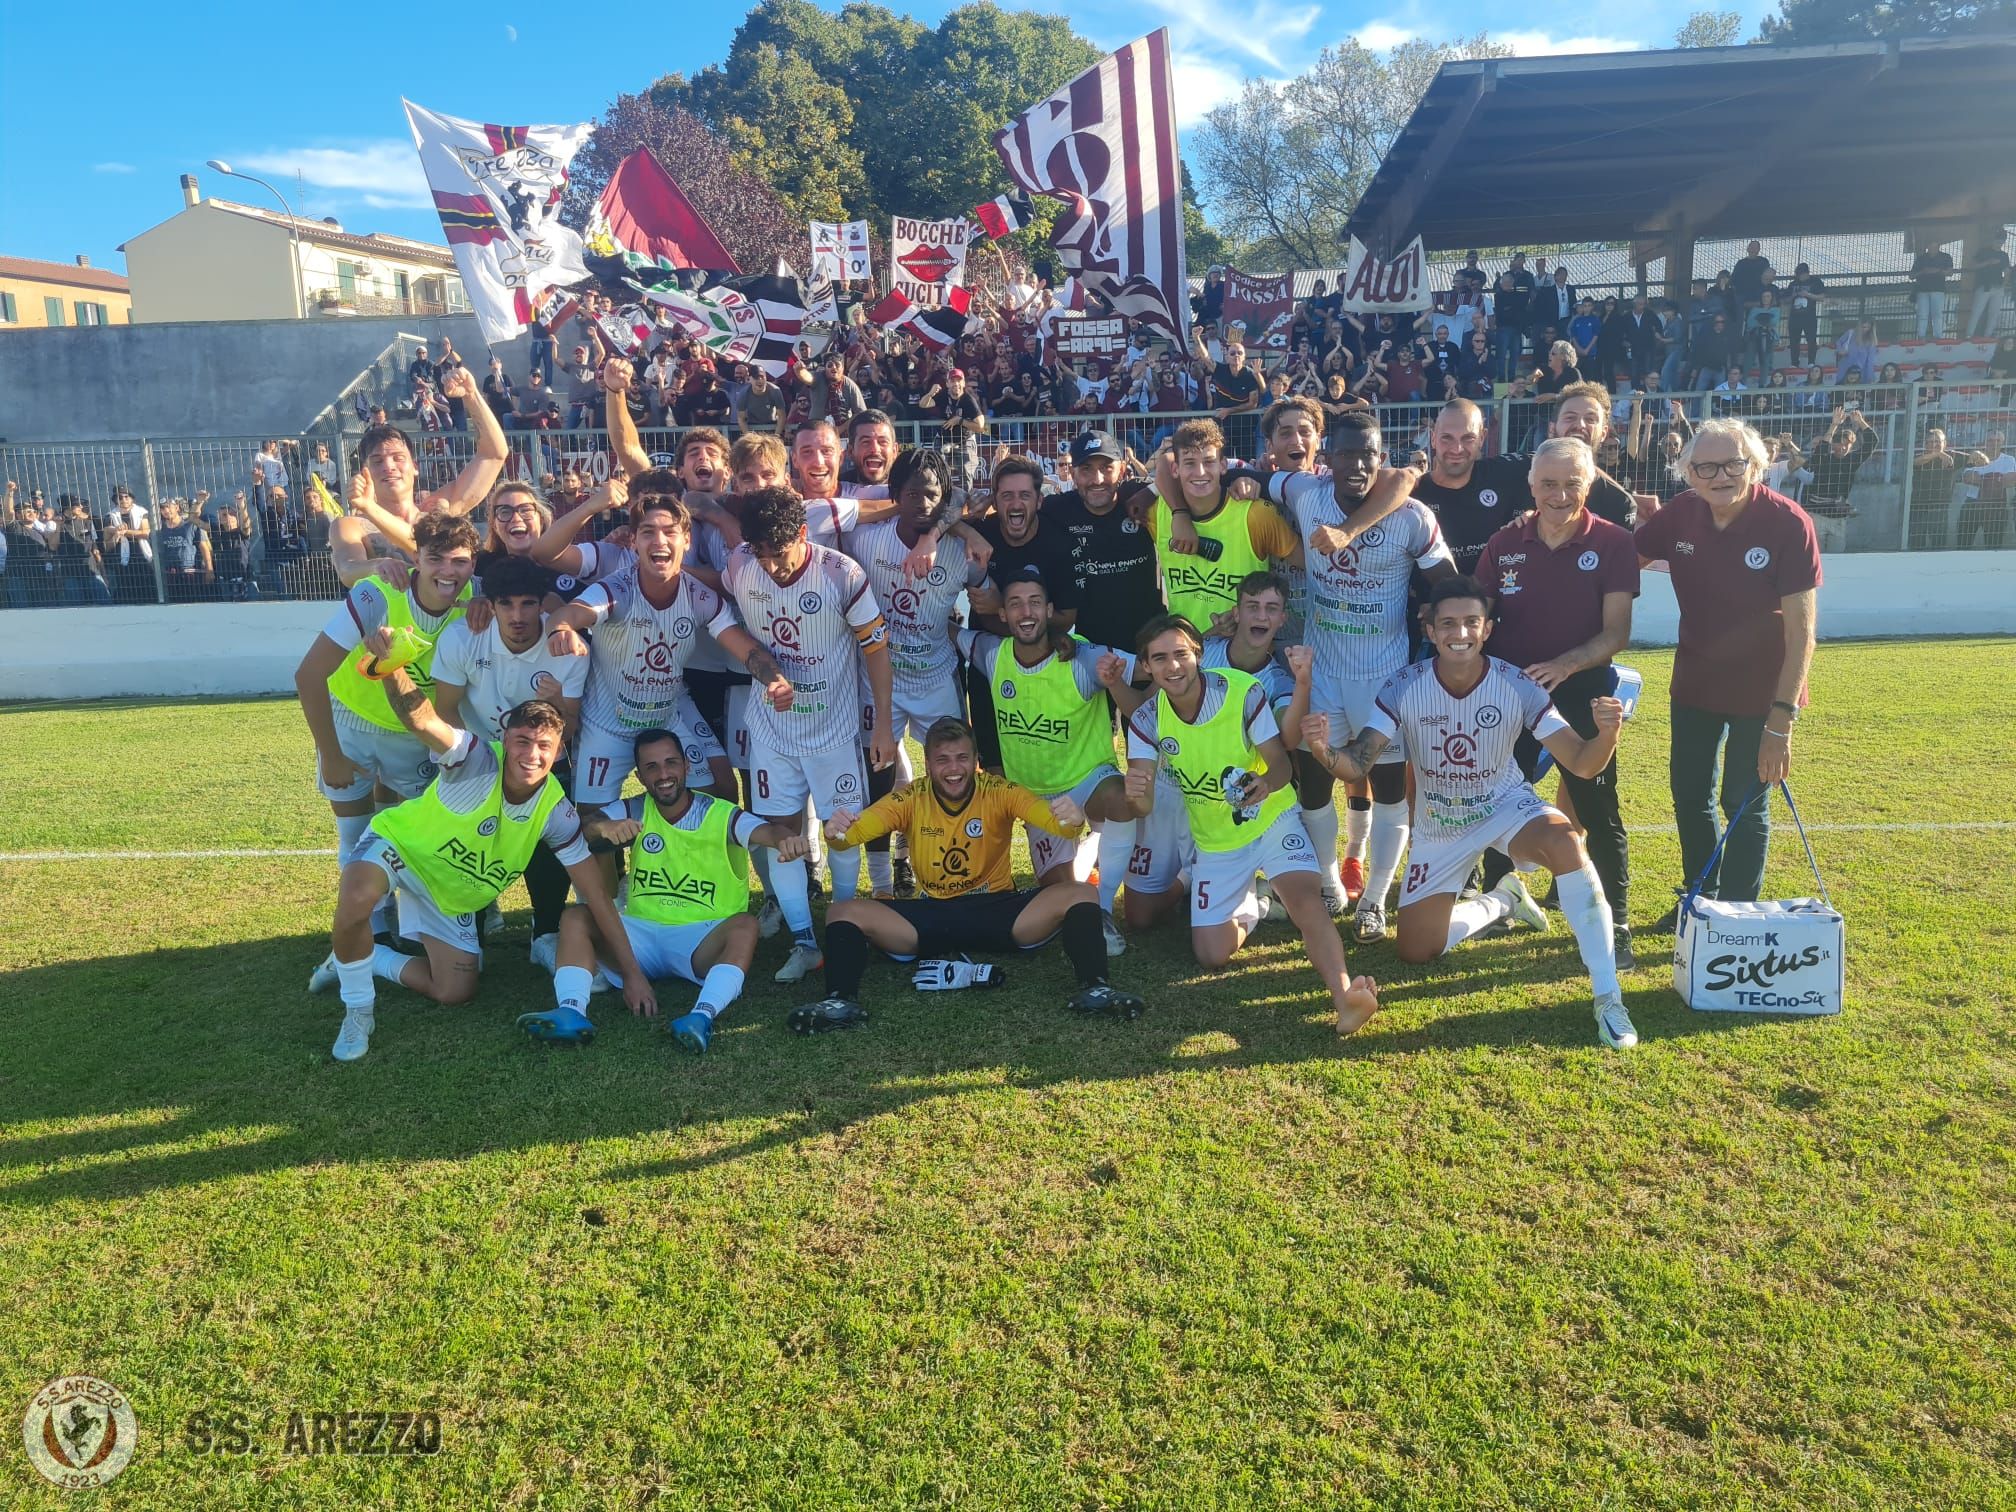 Calcio: Flaminia Civita Castellana 0 – Arezzo 1